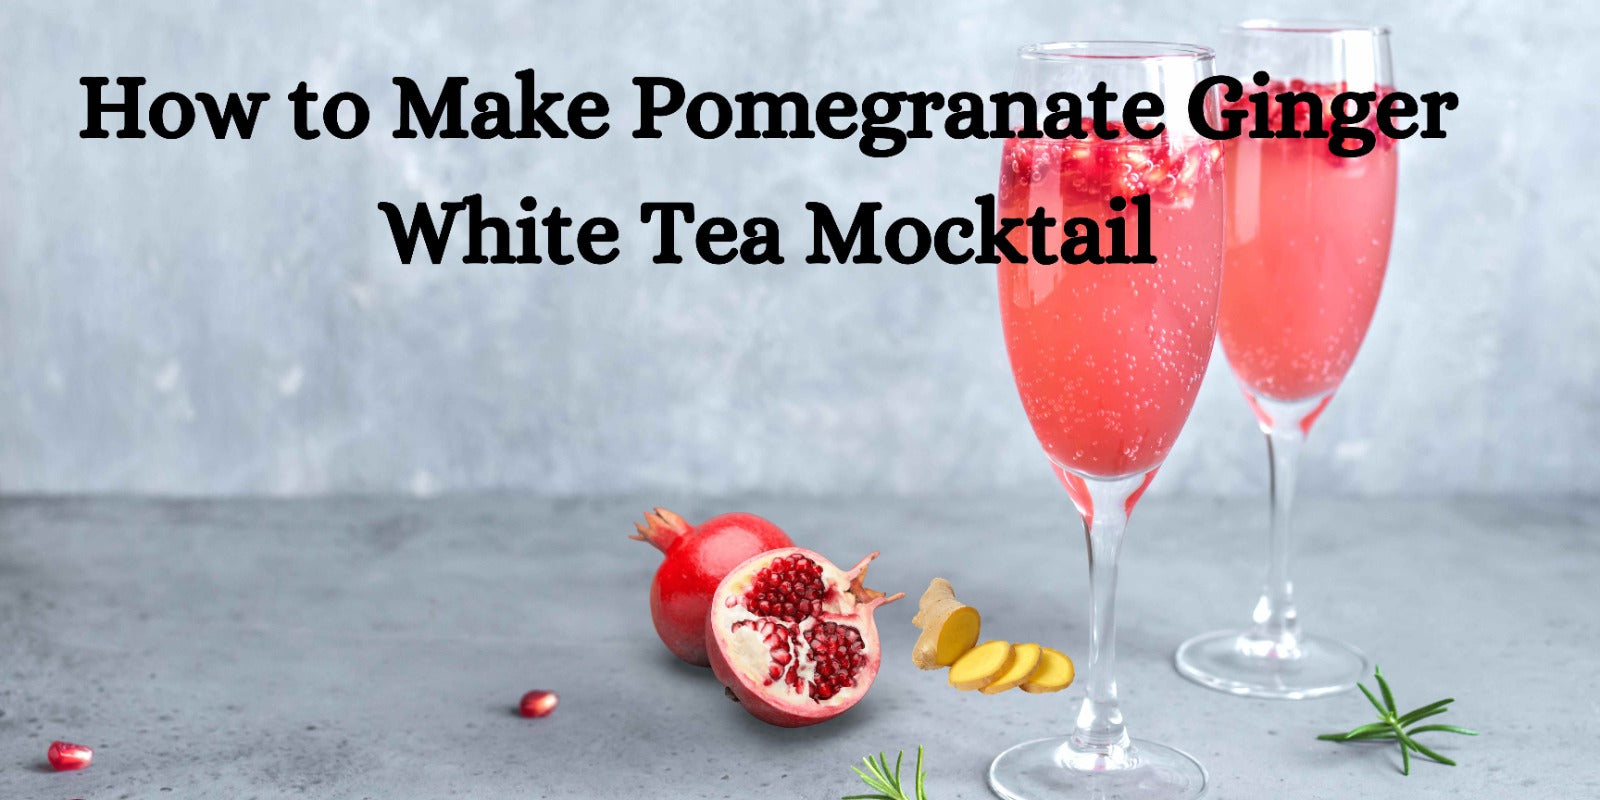 How to Make Pomegranate Ginger White Tea Mocktail